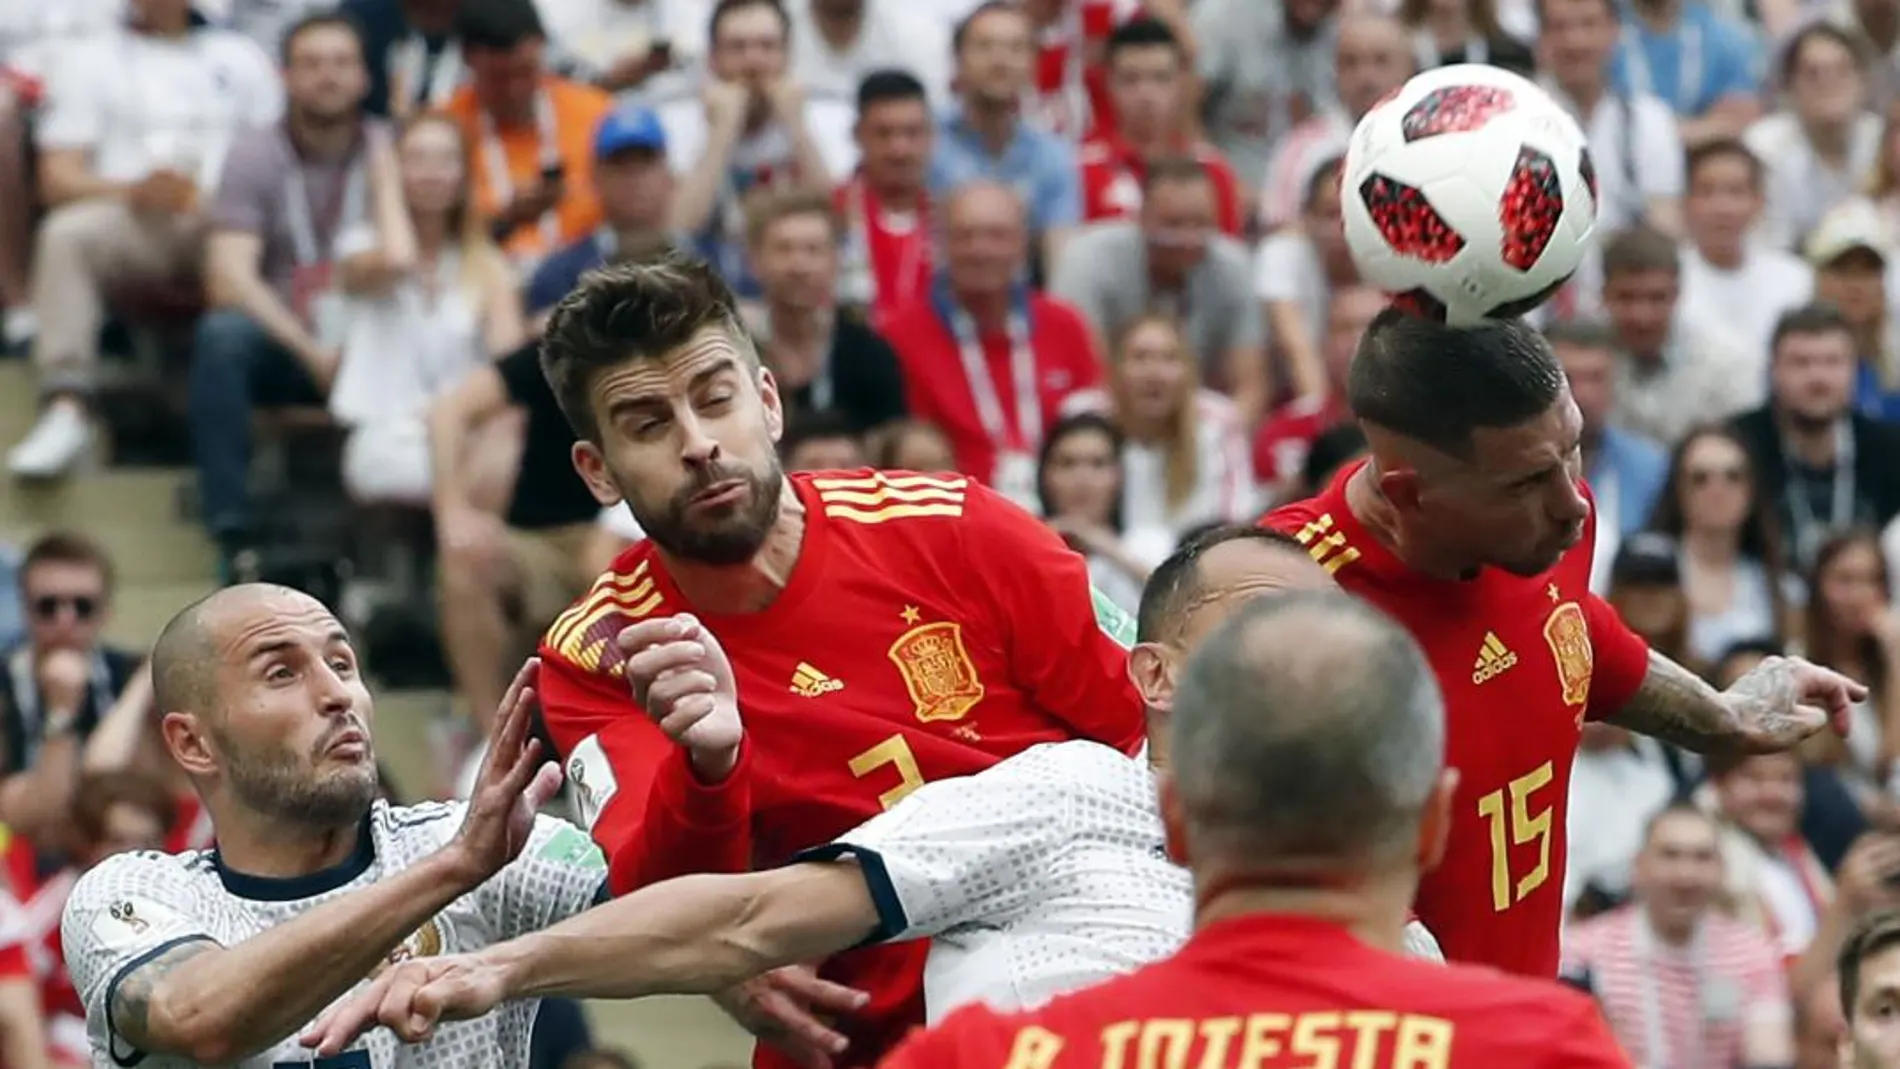 Sergio Ramos cabecea un balón durante el partido/Foto: Efe